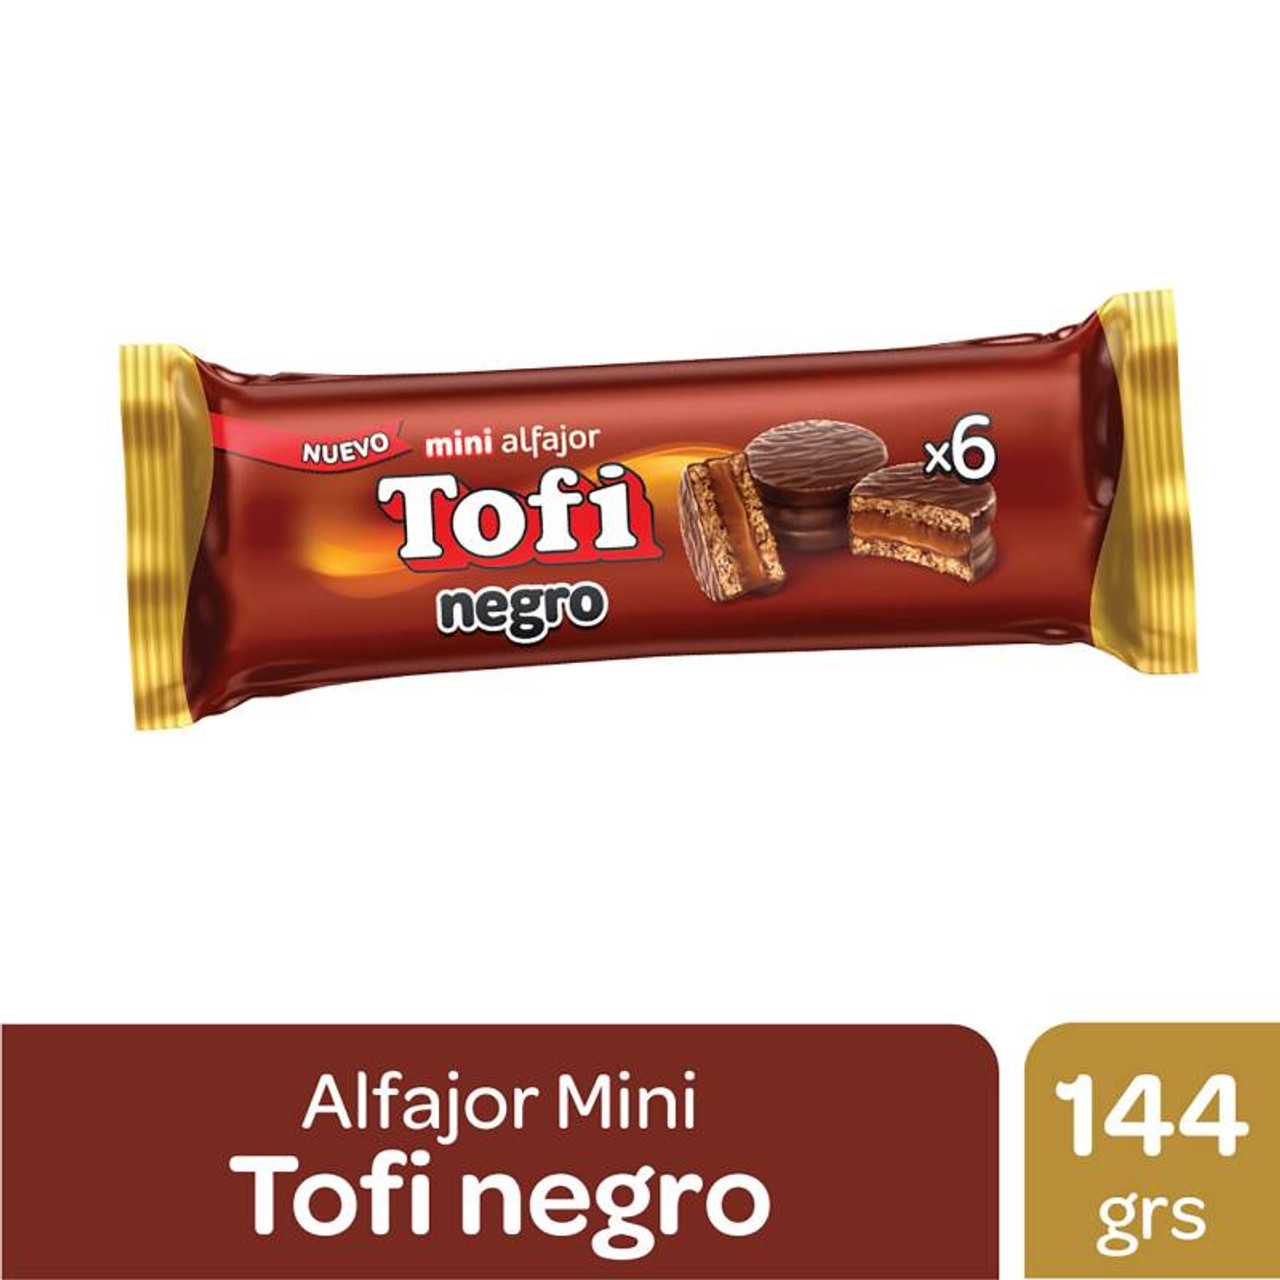 Alfajor Jorgito Negro Dulce de Leche w/ Chocolate Coating